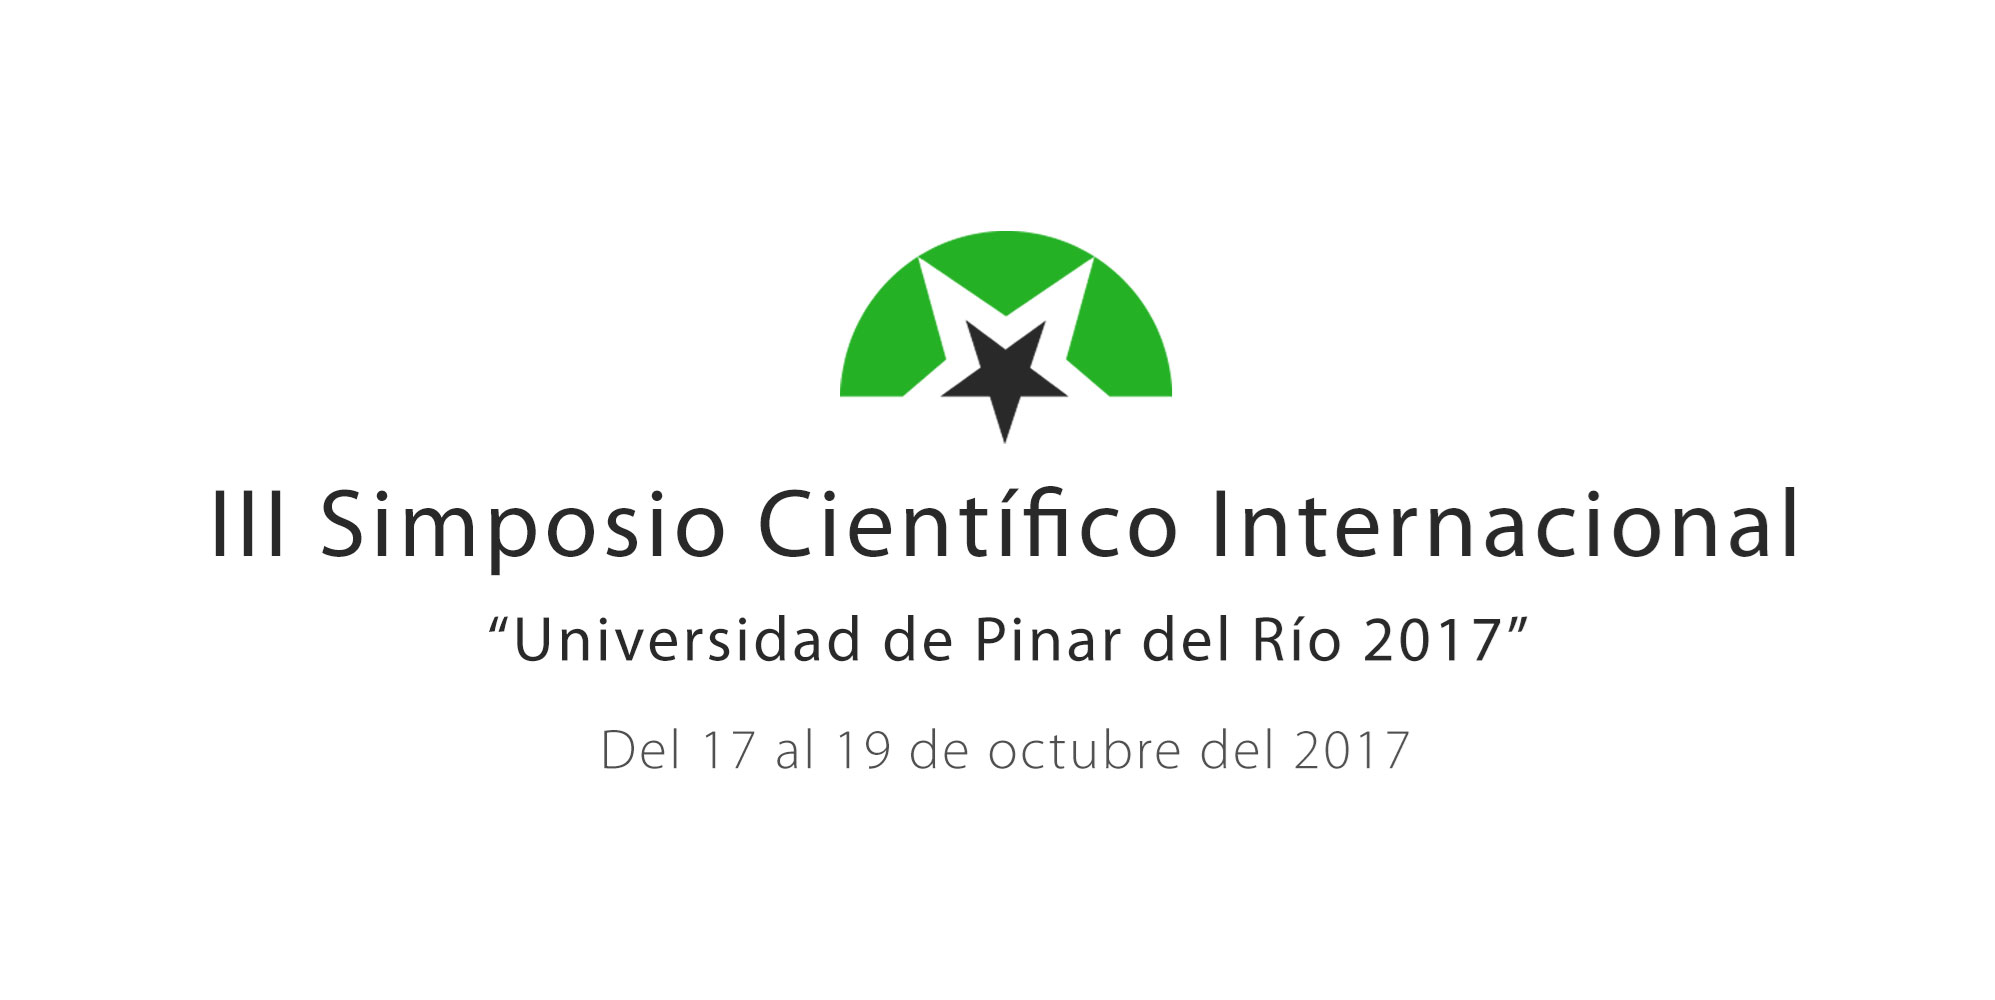 III Simposio Científico Internacional “Universidad de Pinar del Río 2017”